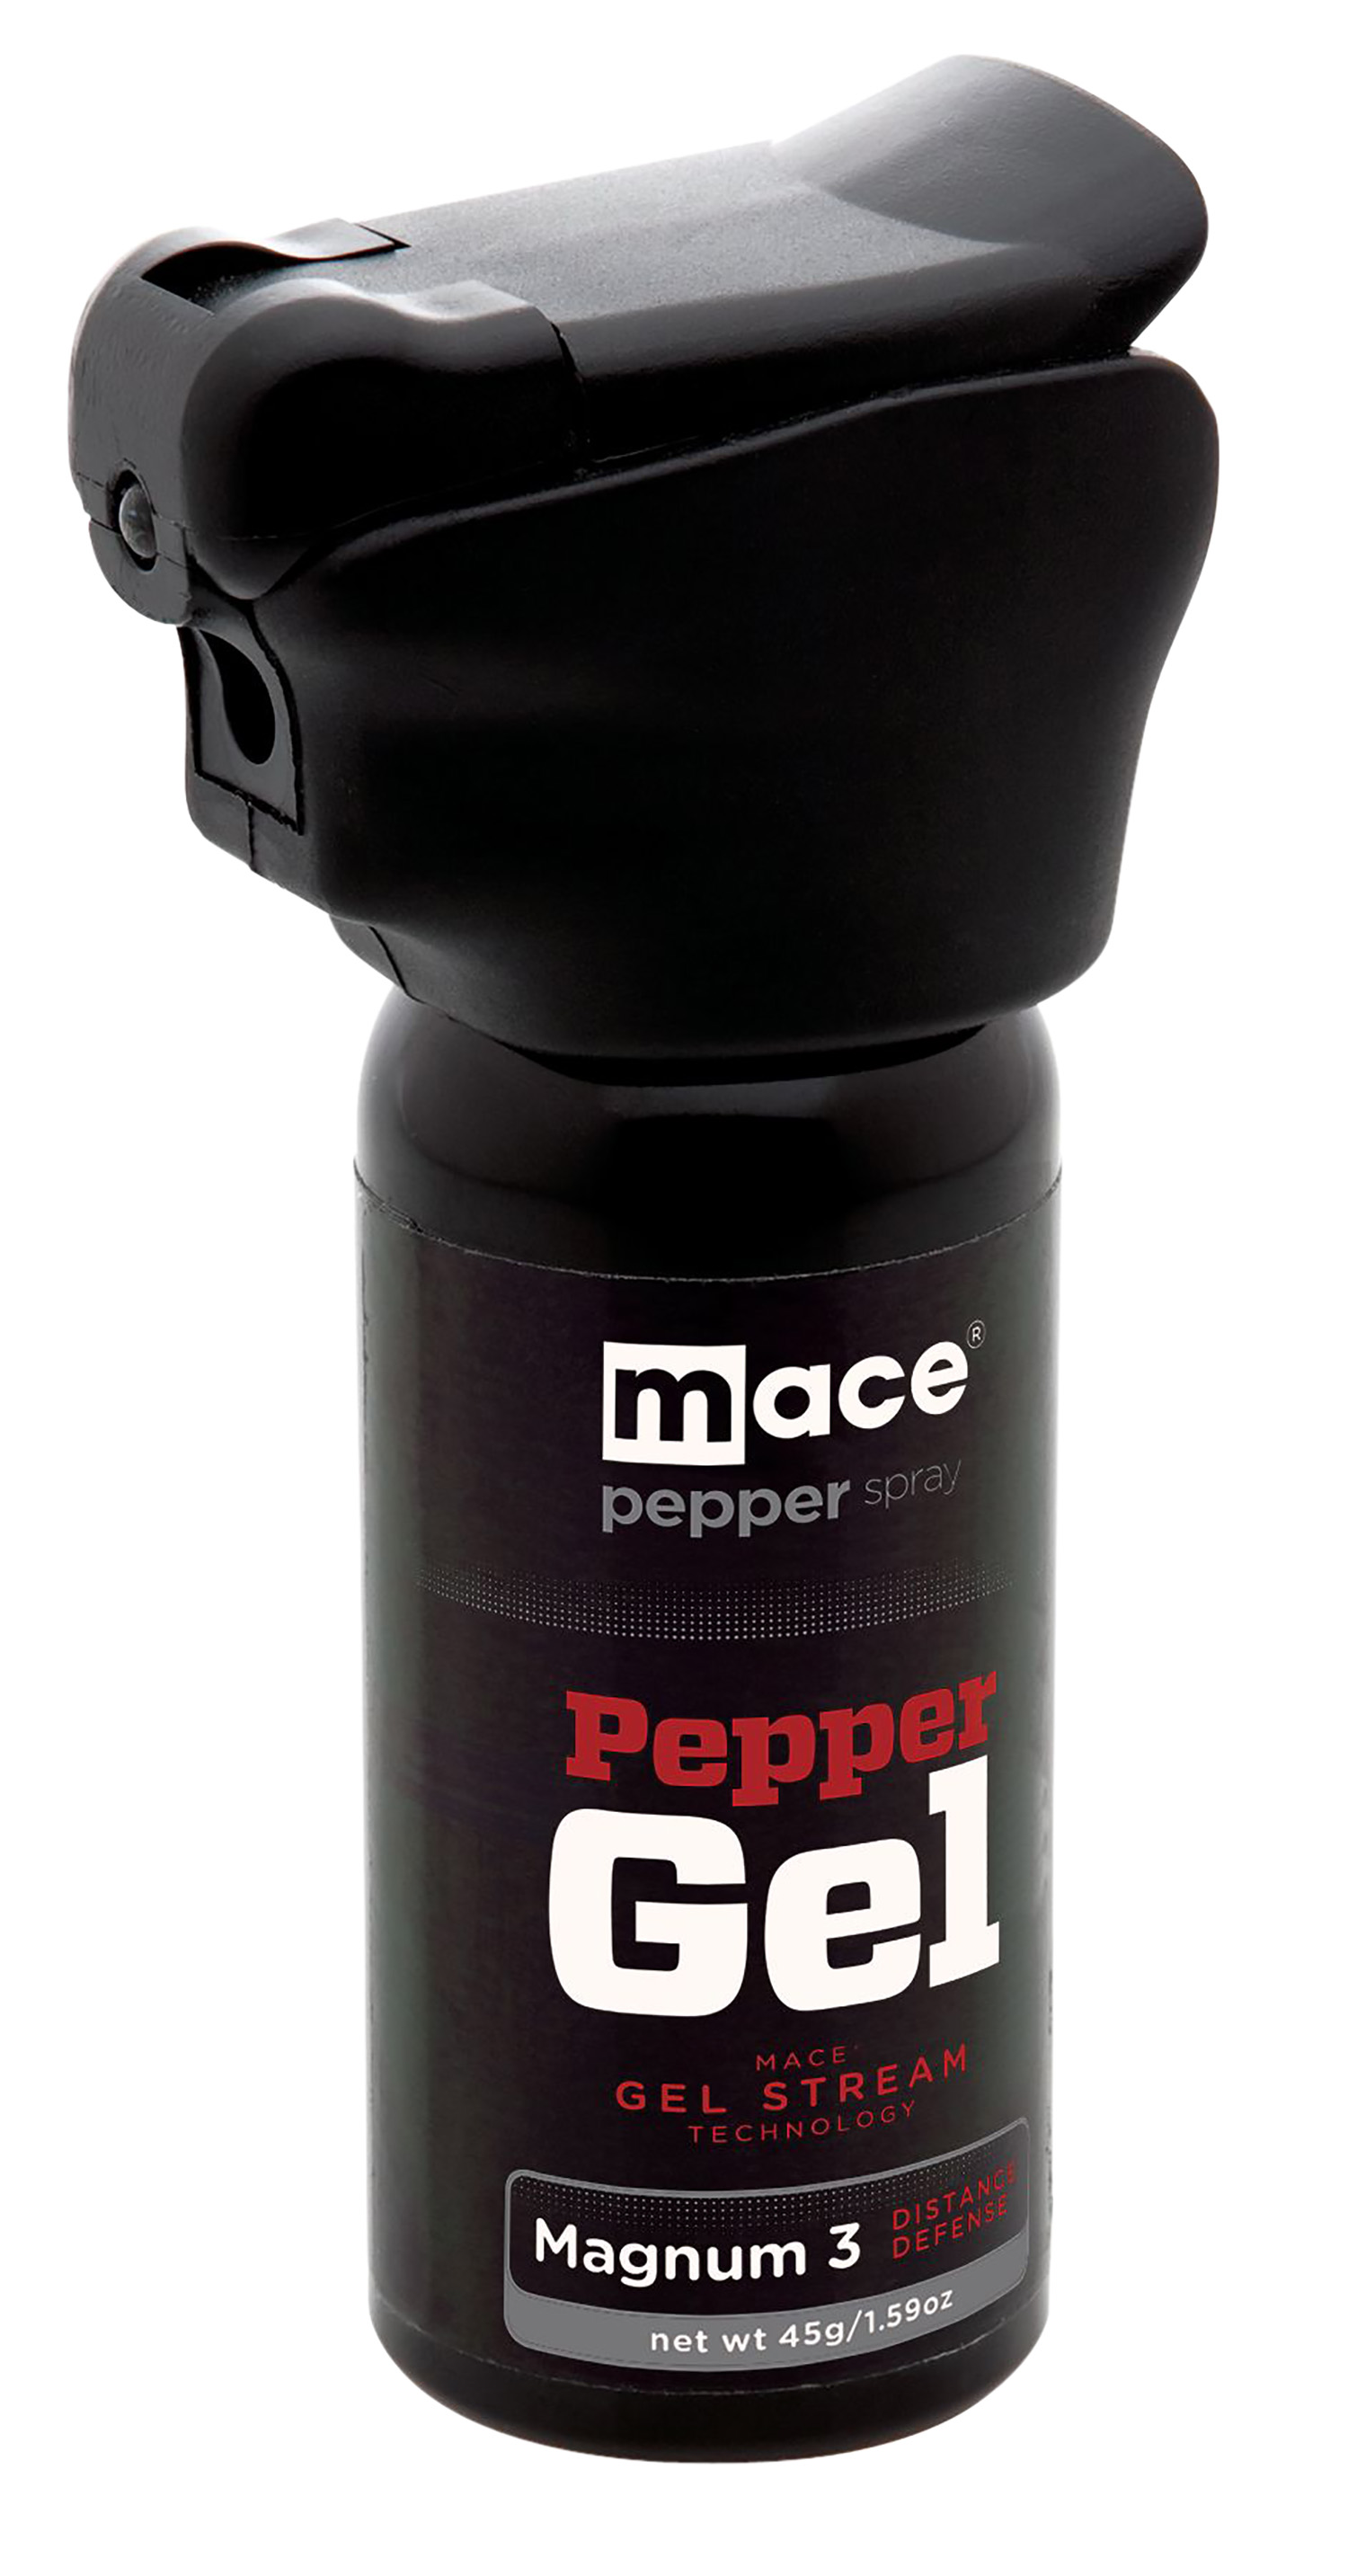 MACE Night Defender Pepper Spray